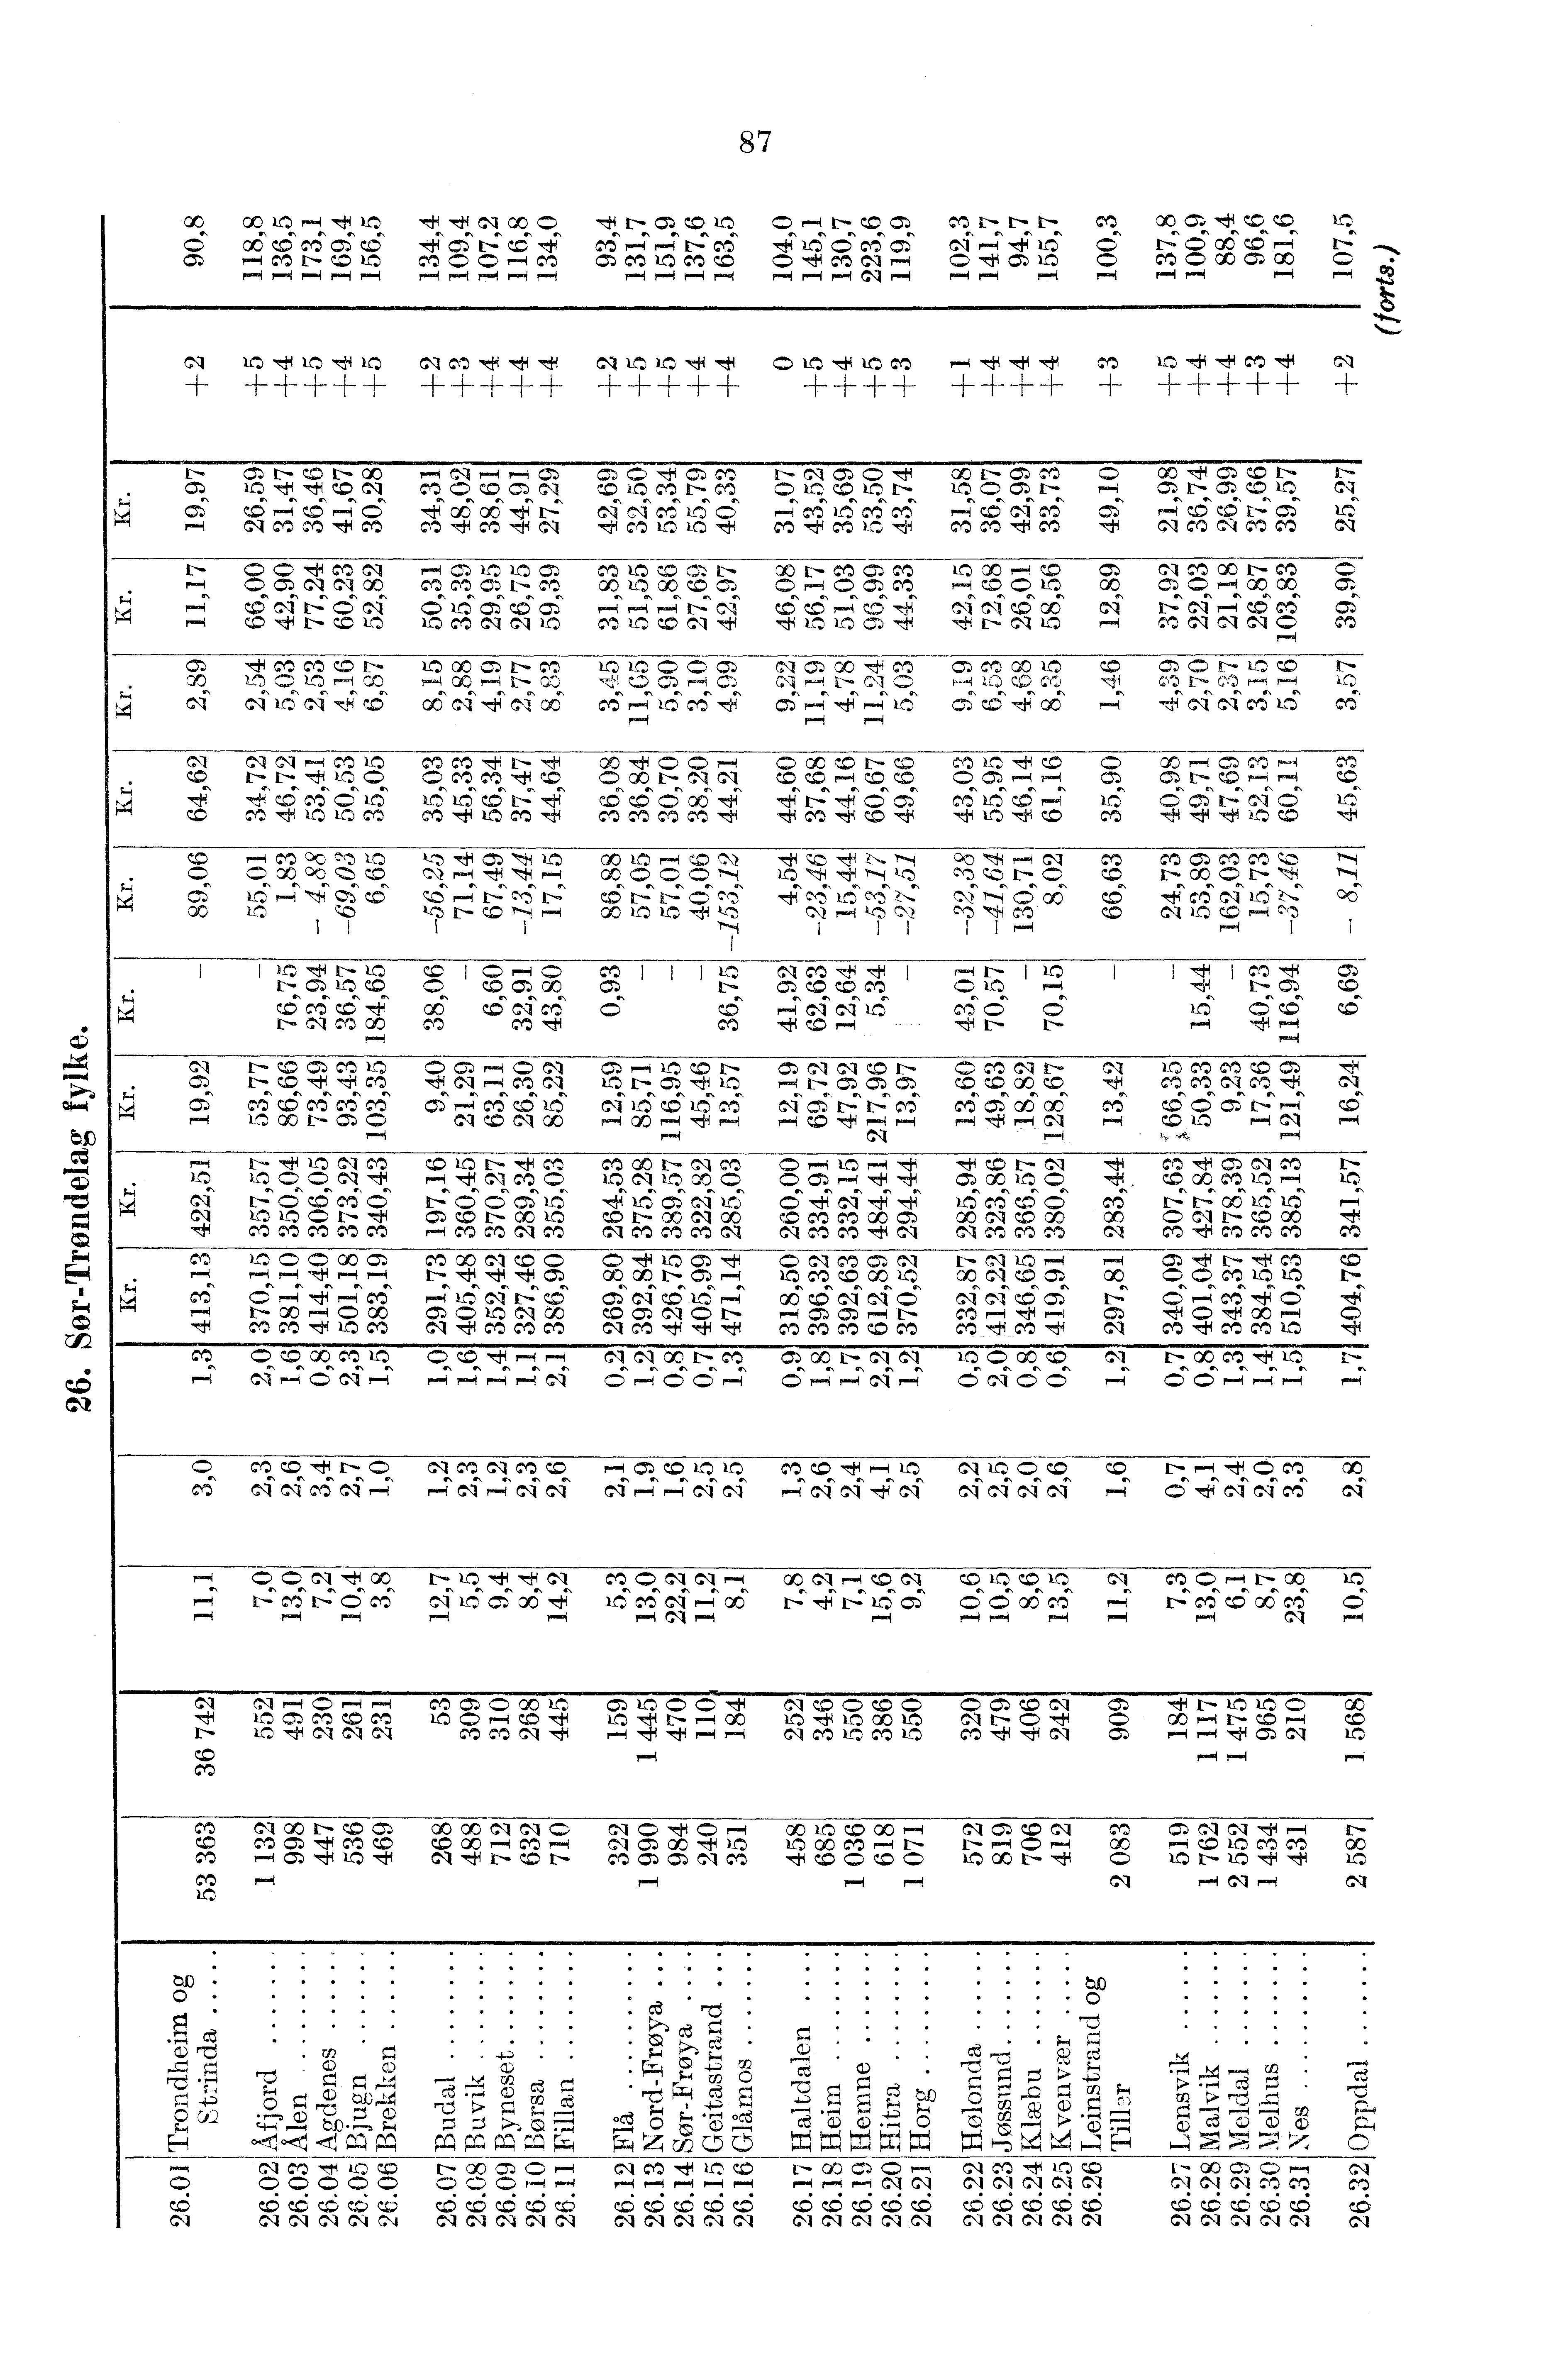 87, GC (5 cn cq --1-- CC ul r-, 7f 4.: 06Q6Ce45,--imt-co,-,1,-...1,--1 lfz -1-1- d- d-- +,f,f Ci 00 4c,i't=ce4,,..1,--f,-.1 vcn--,ii +++++,f C- CZ., QC ej vist.--7 cnmemco,...ip-.. cql_c7t.